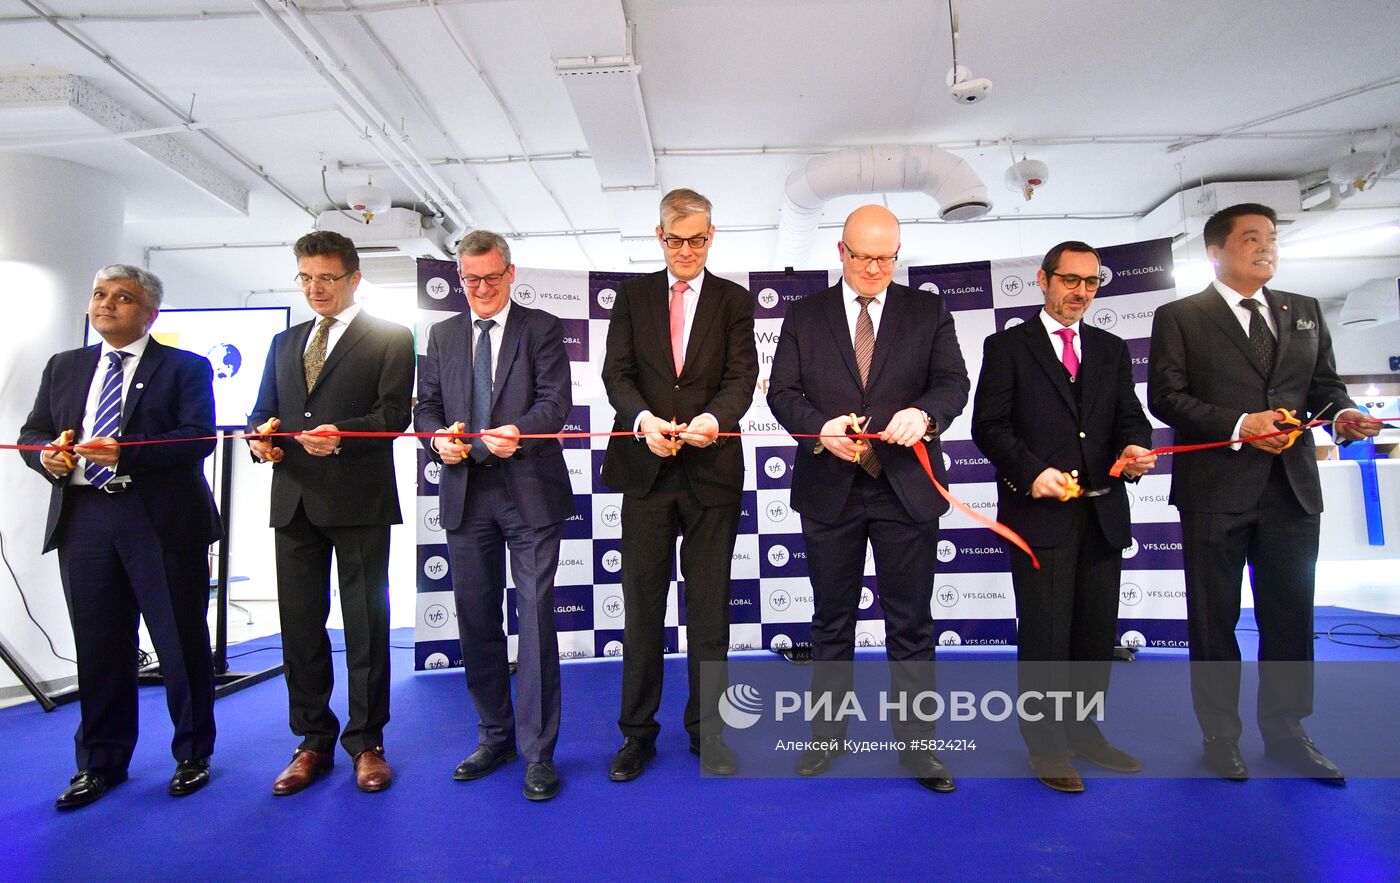 Открытие объединенного визового центра в Москве